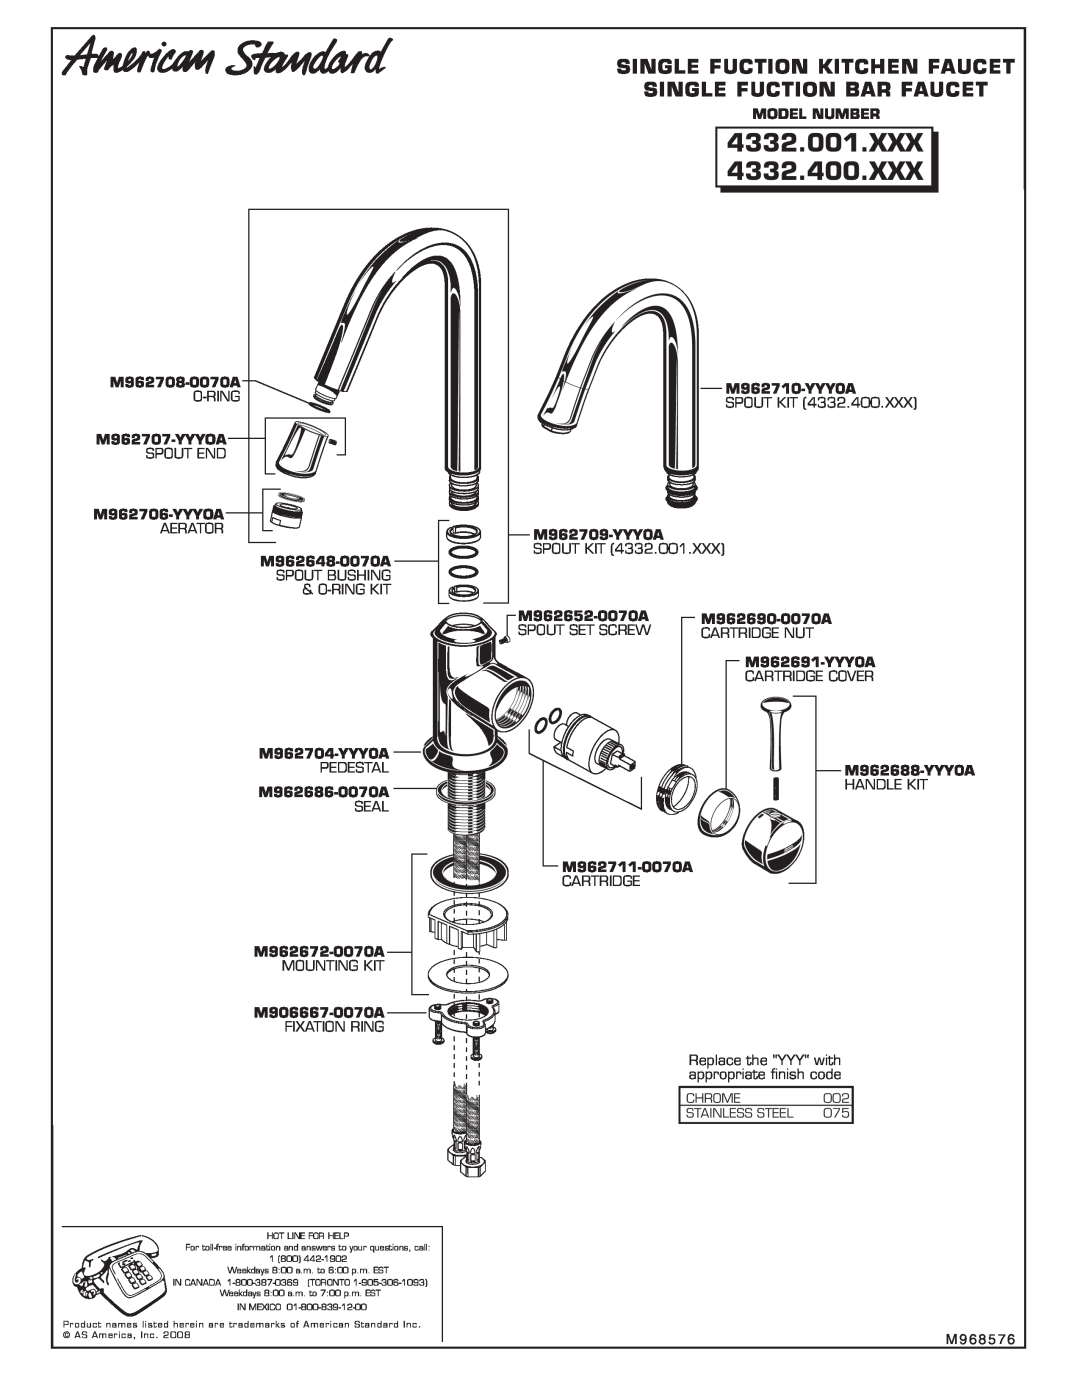 American Standard 4332.001.XXX, 4332.400.XXX Single Fuction Kitchen Faucet, Single Fuction Bar Faucet, Model Number 